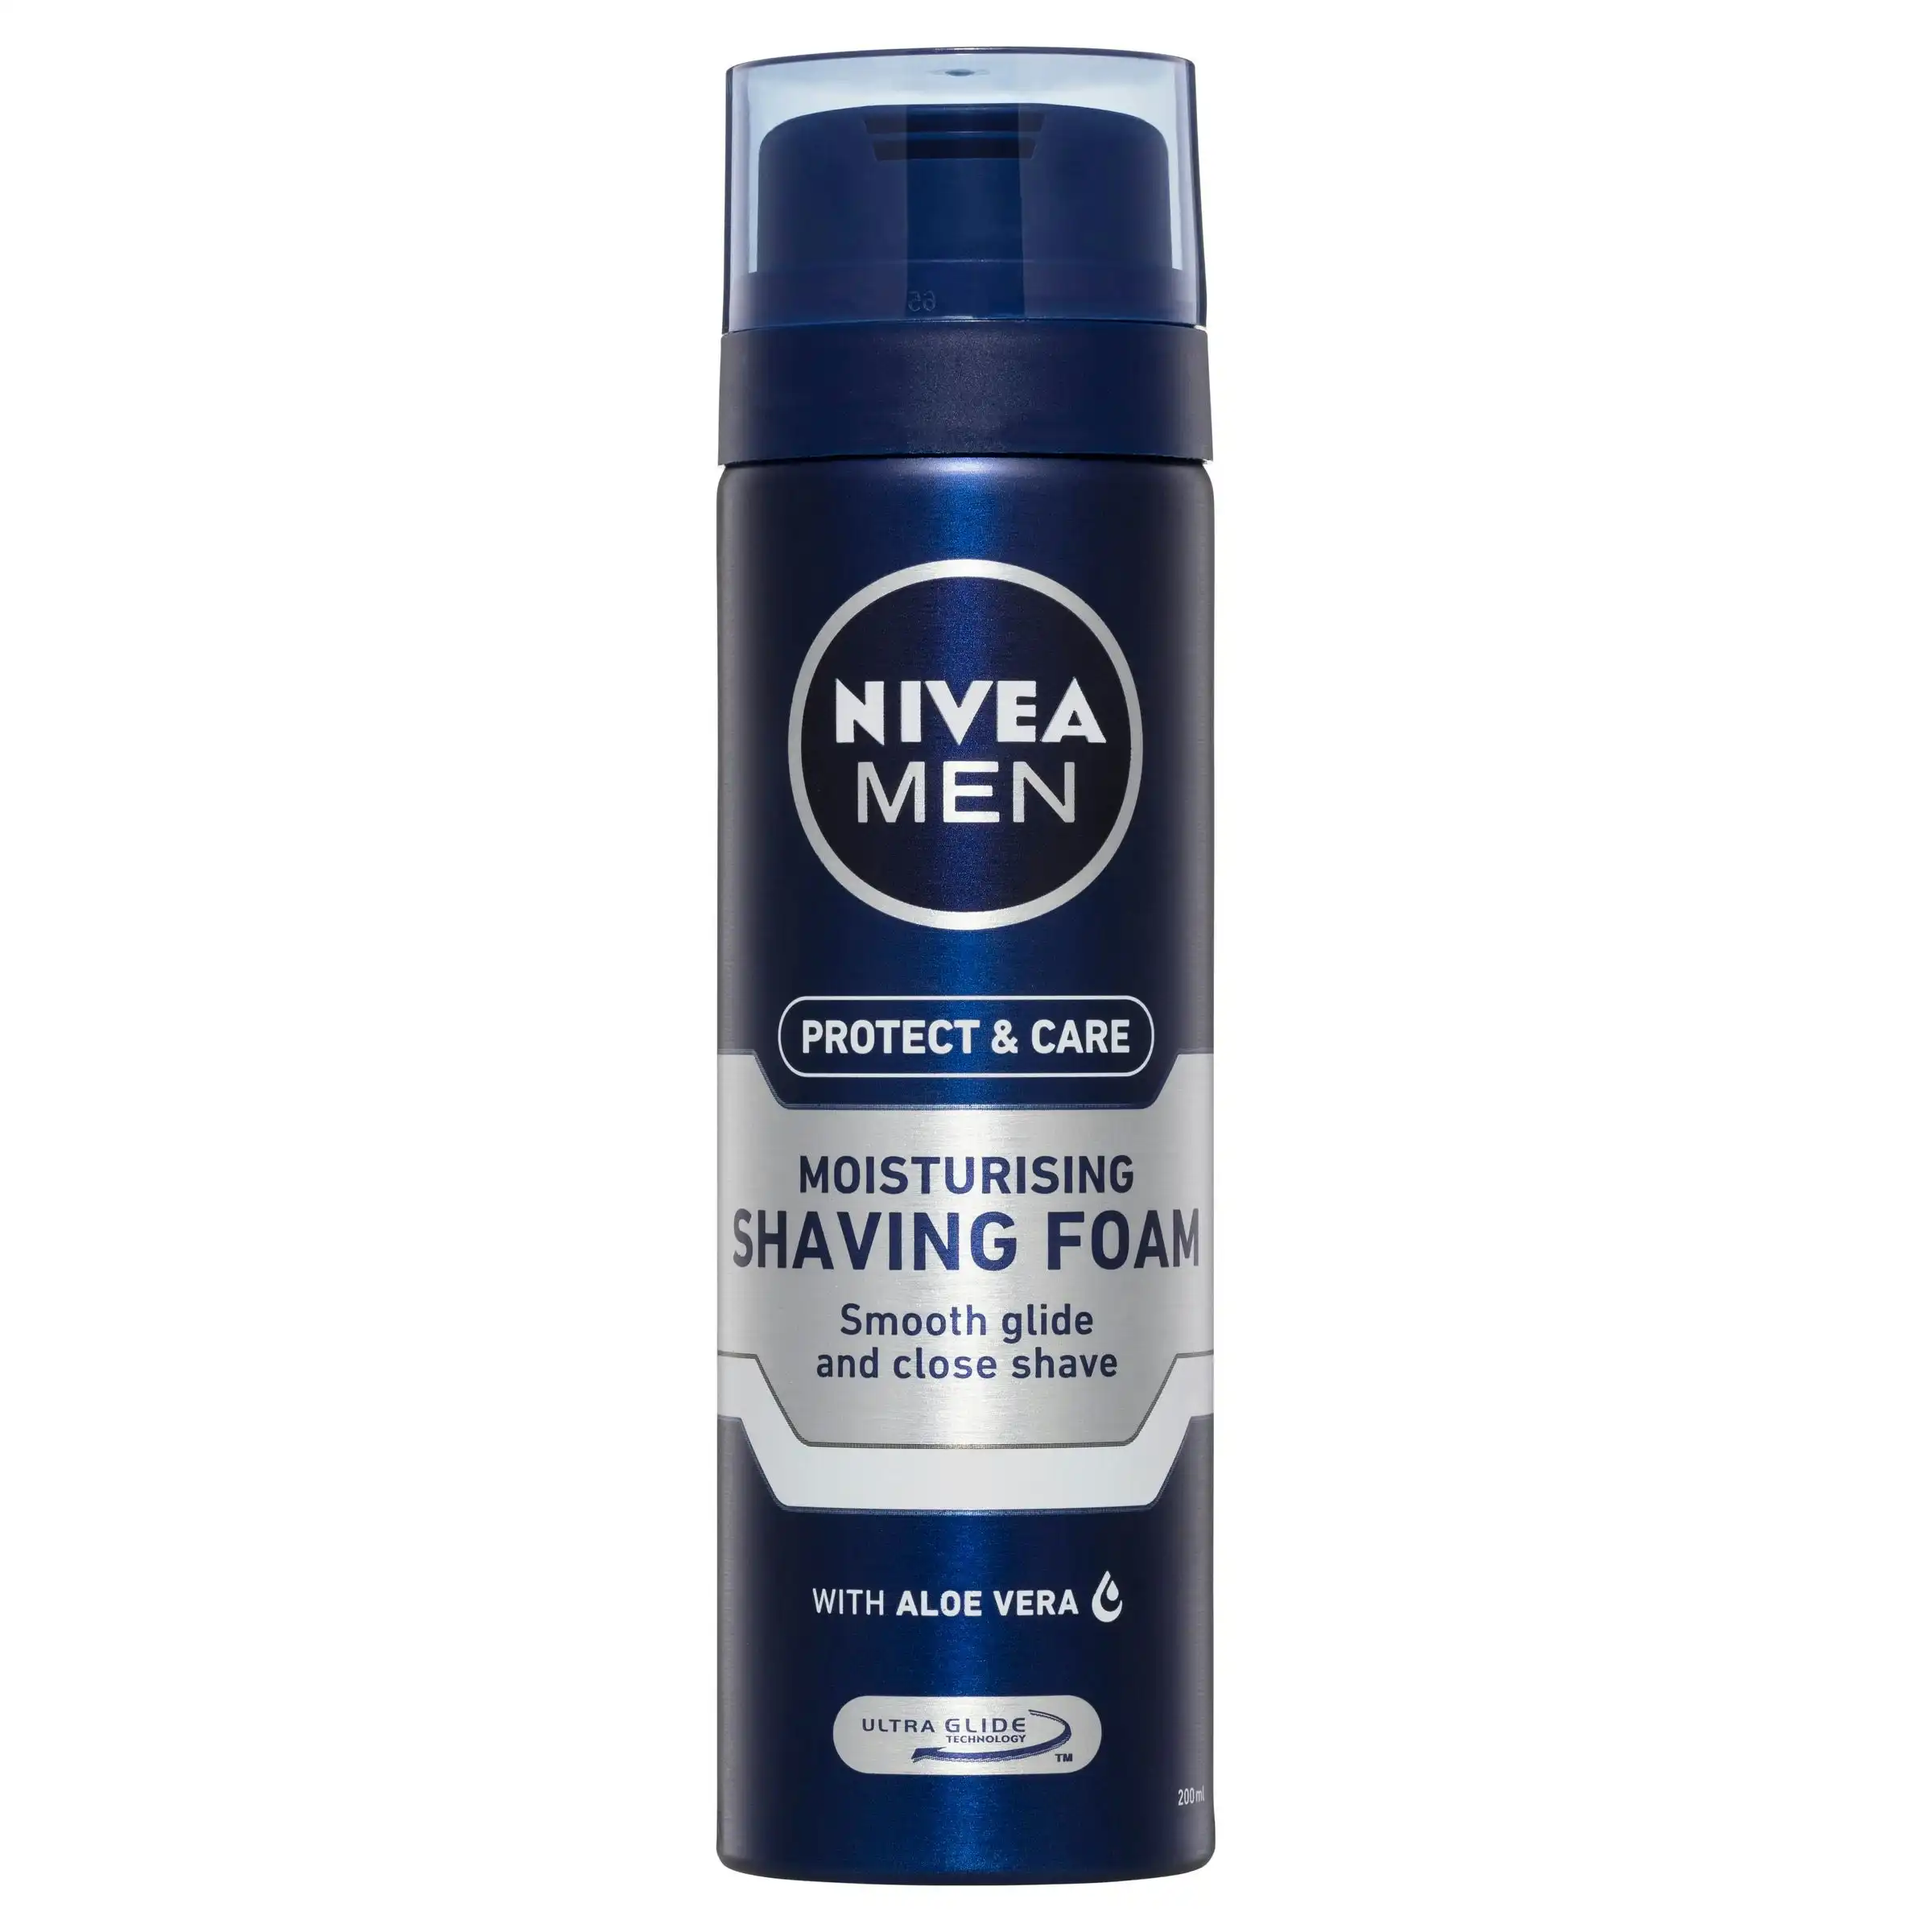 Nivea for Men Shaving Foam Moisturising 200ml